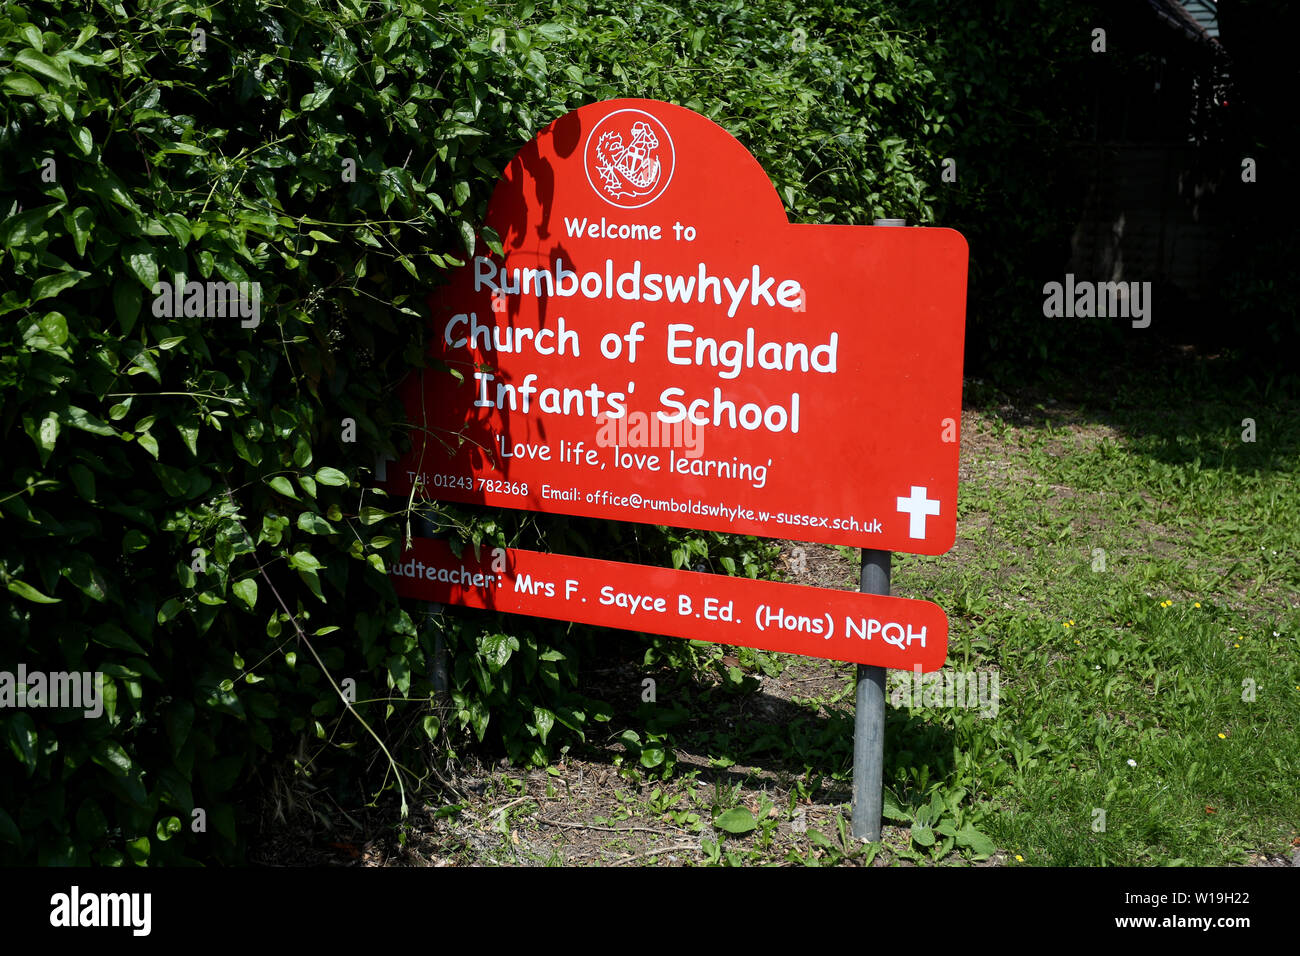 Allgemeine Ansichten der Rumboldswhyke Church of England Childins School in Chichester, West Sussex, Großbritannien. Die Schule soll nach Gemeinderatskürzungen geschlossen werden. Stockfoto